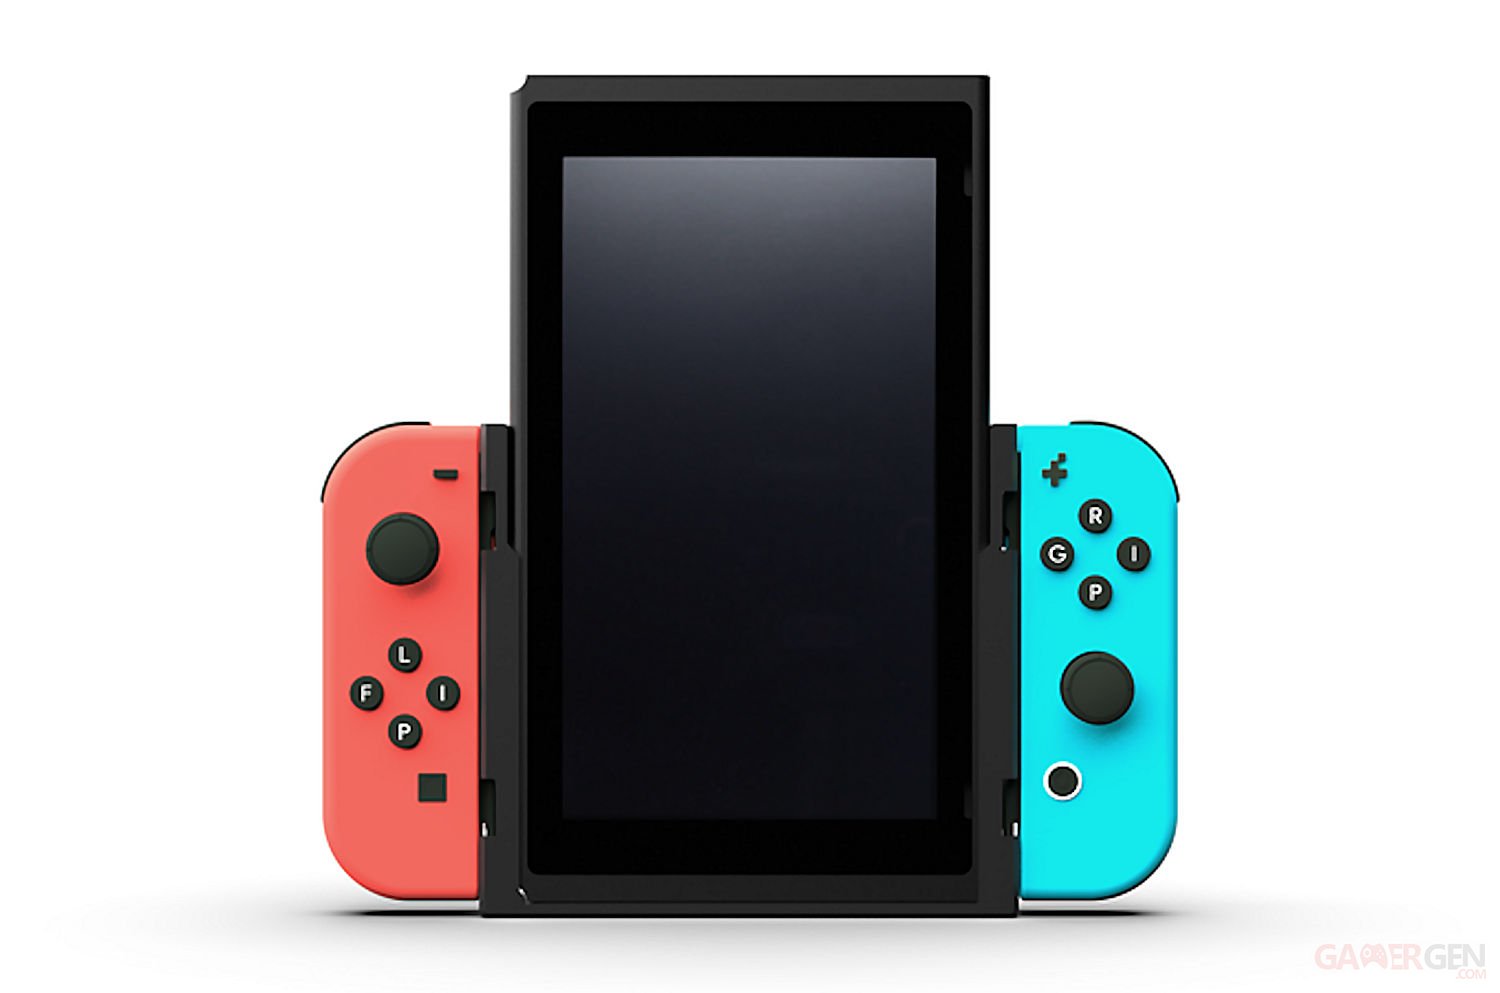 Nintendo Switch : un support étonnant pour jouer à la console